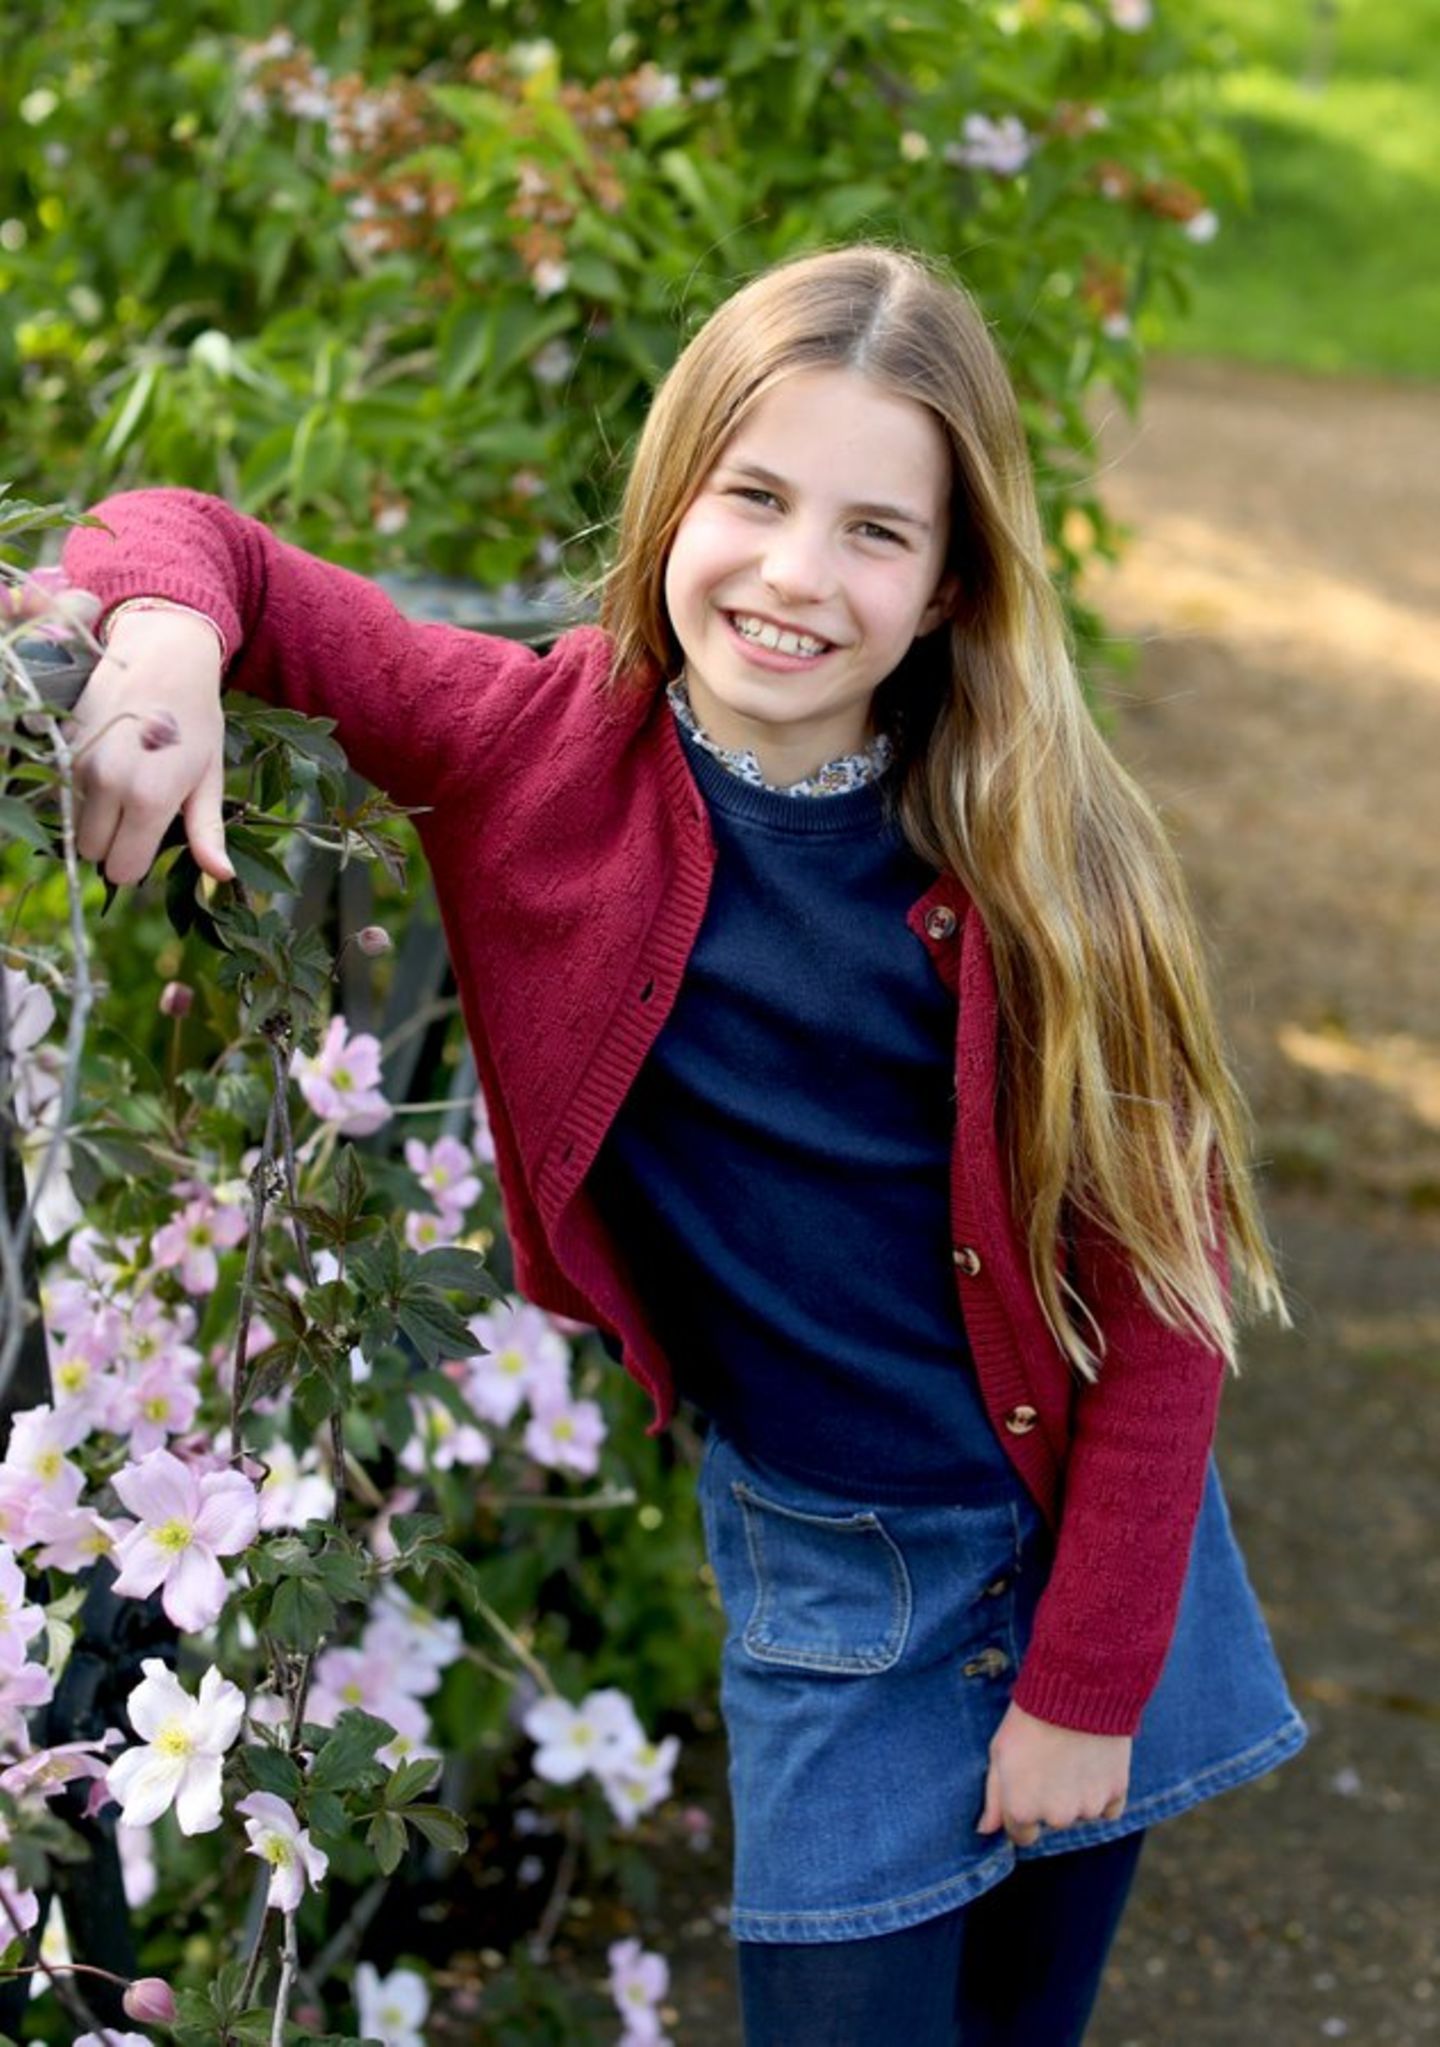 Royale Kinder-Fotos: Prinzessin Charlotte